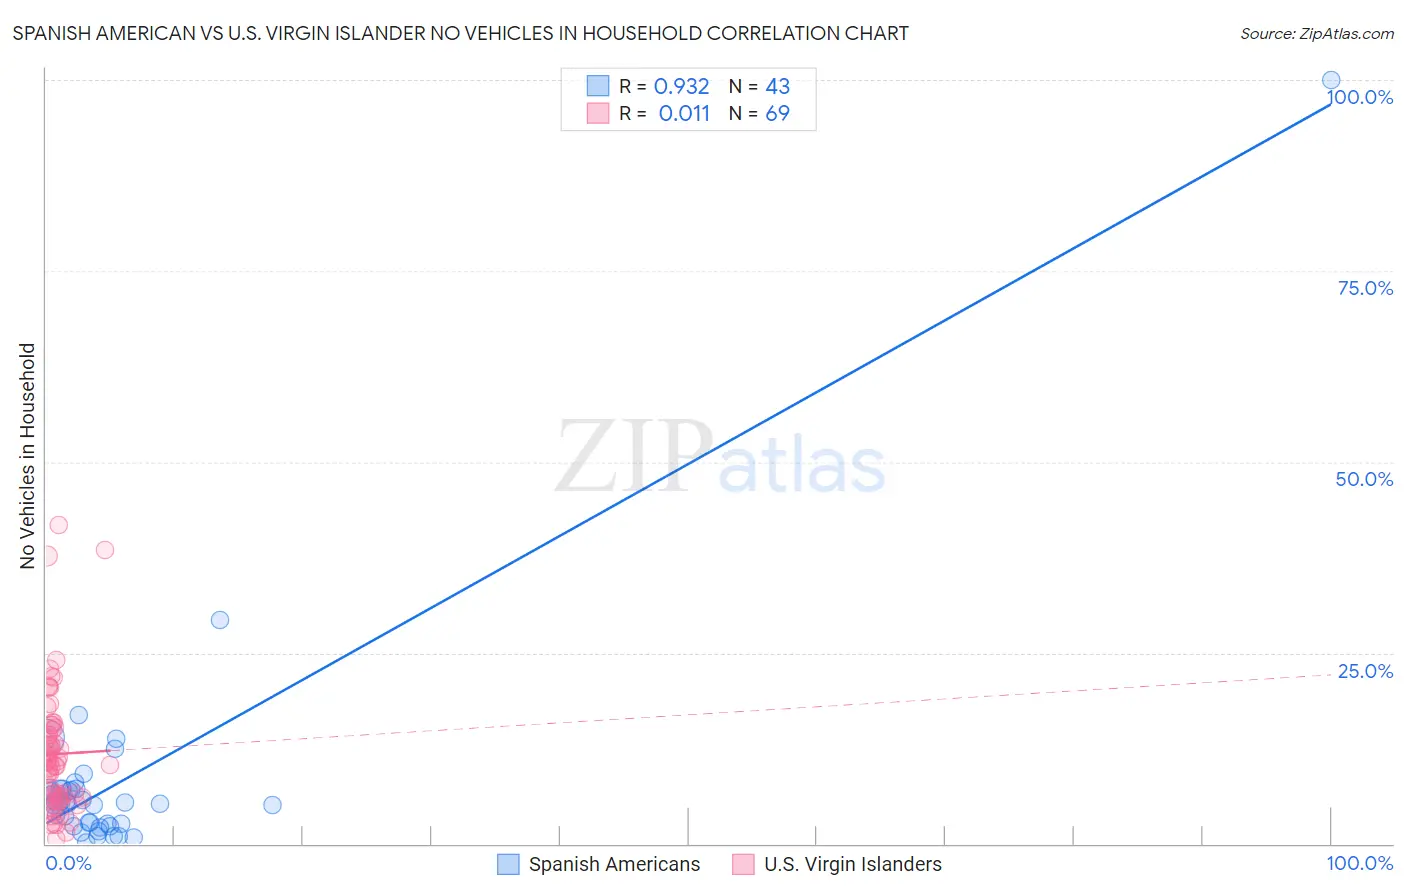 Spanish American vs U.S. Virgin Islander No Vehicles in Household